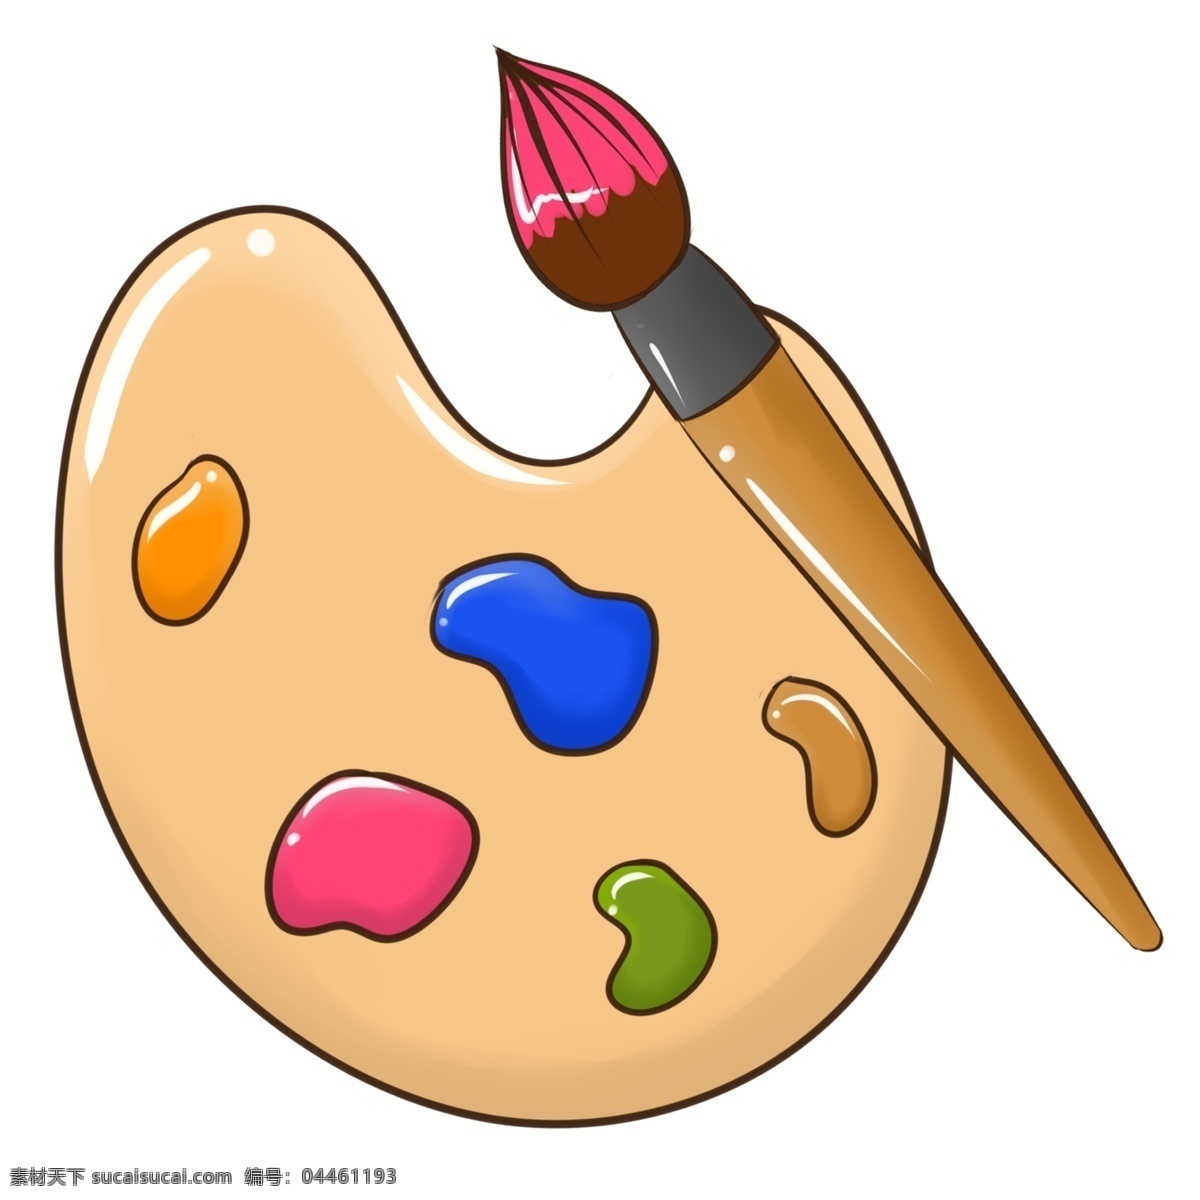 学习 工具 画板 插画 绿色的颜料 卡通插画 手绘工具插画 蓝色的颜料 粉色的颜料 学习工具插画